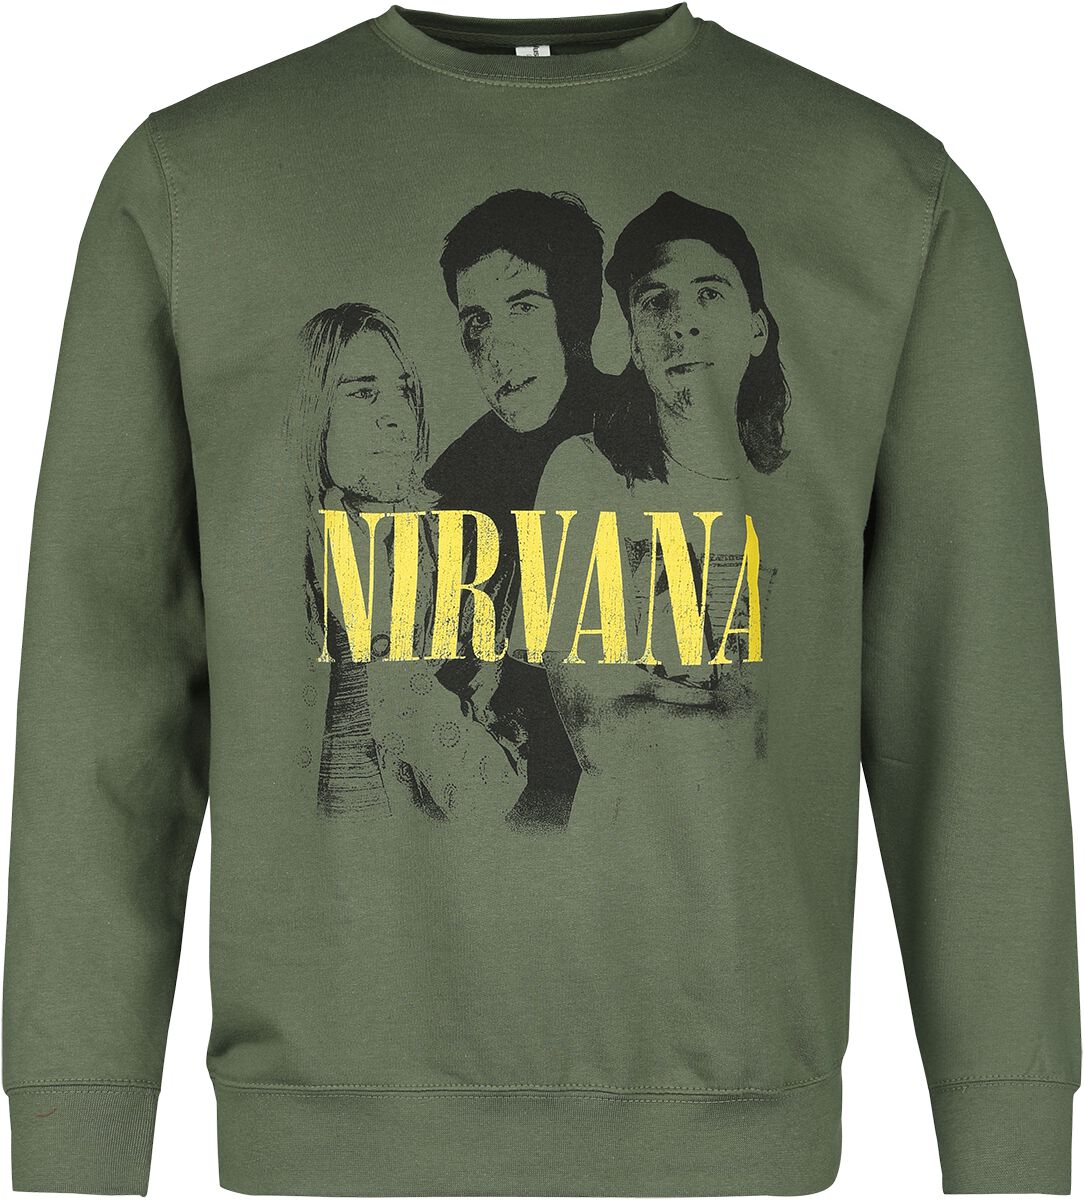 Nirvana Langarmshirt - Photo - S bis XXL - für Männer - Größe L - grün  - Lizenziertes Merchandise!